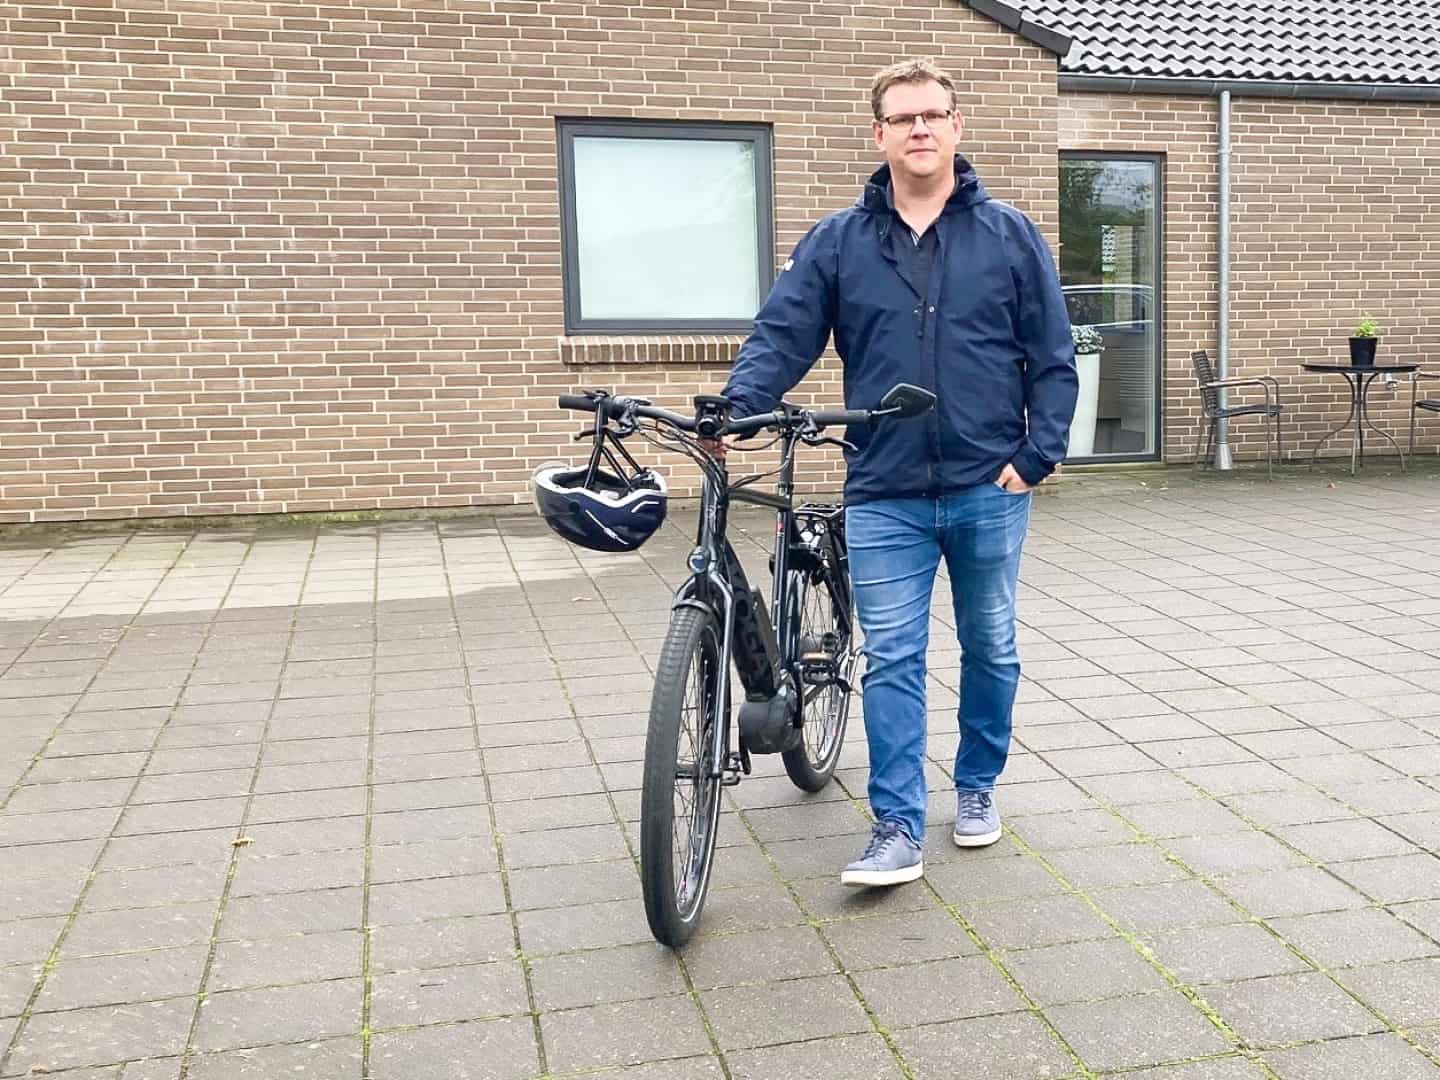 Radikal cykler helst mellem hjemmet i Billund og Grindsted: Men ringe cykelveje har tvunget ham til at købe bil nummer to | jv.dk